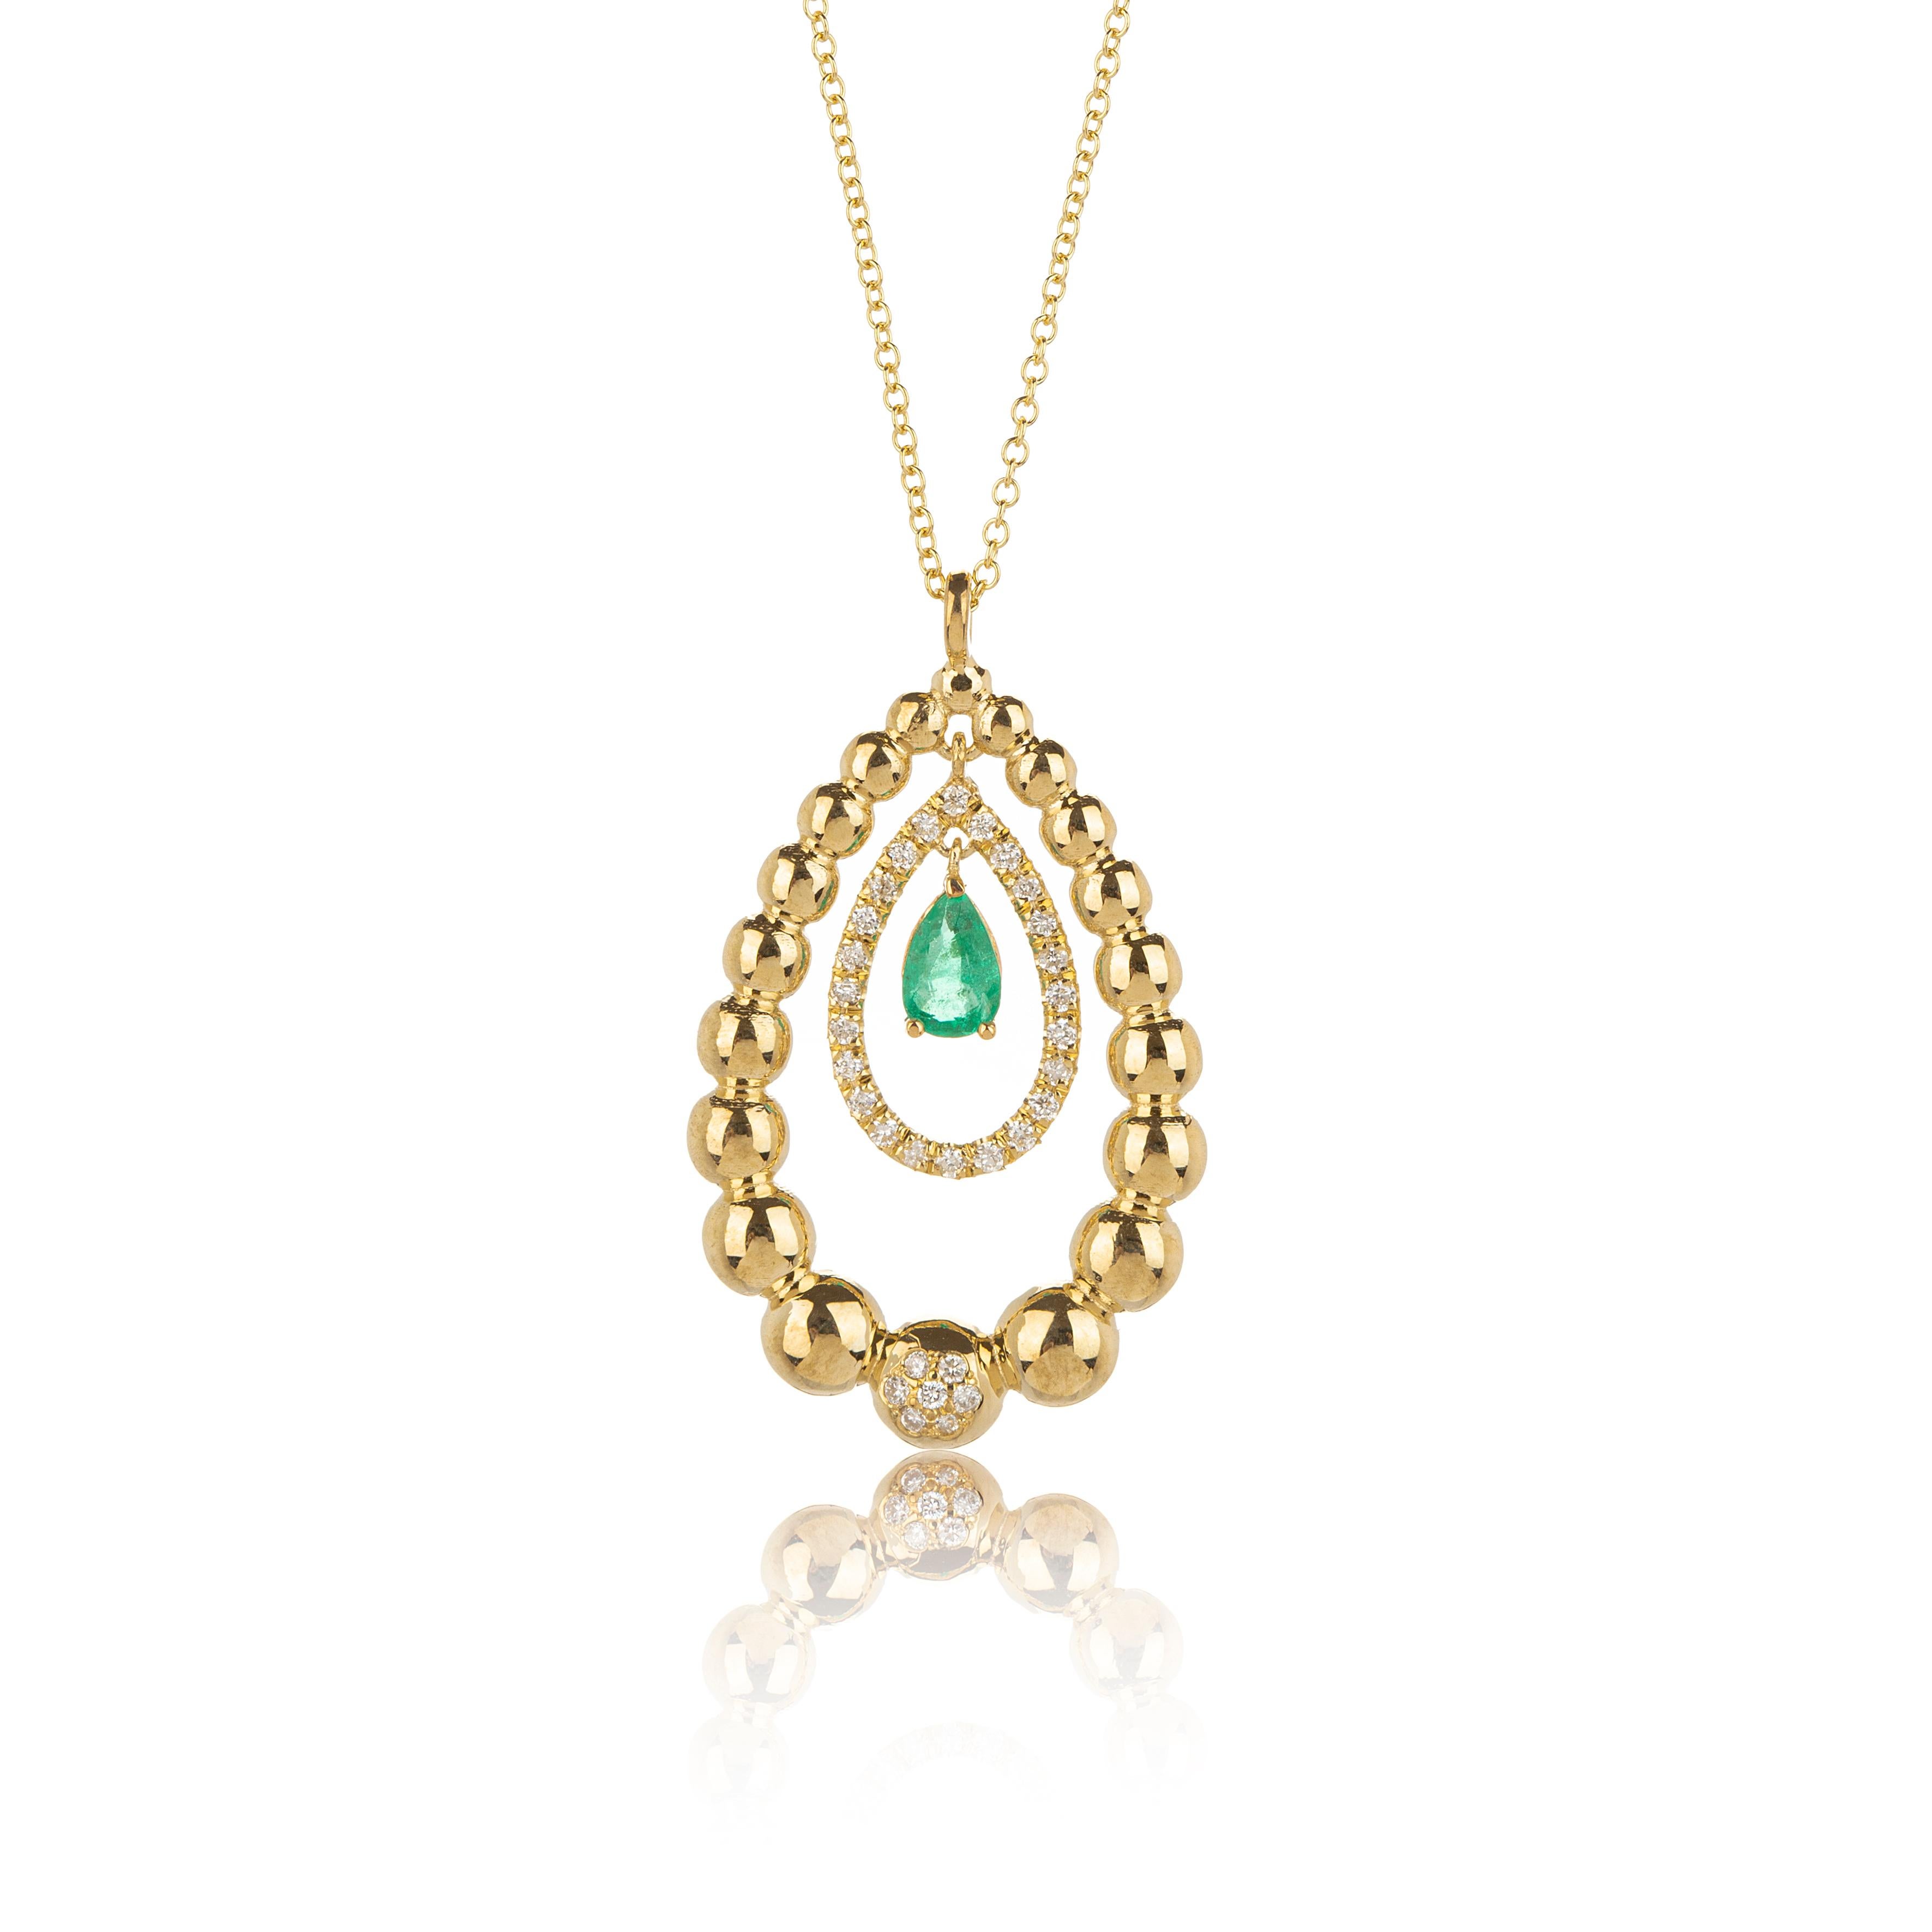 Smaragd Birnenschliff und Birne  Form-Halskette aus 18 Karat Gold mit Diamanten. Die Halskette ist in drei verschiedene Stufen eingeteilt. Der Smaragdstein in der Mitte der Kette, hat eine schöne und süße zarte Bewegung und der Birnenschliff macht